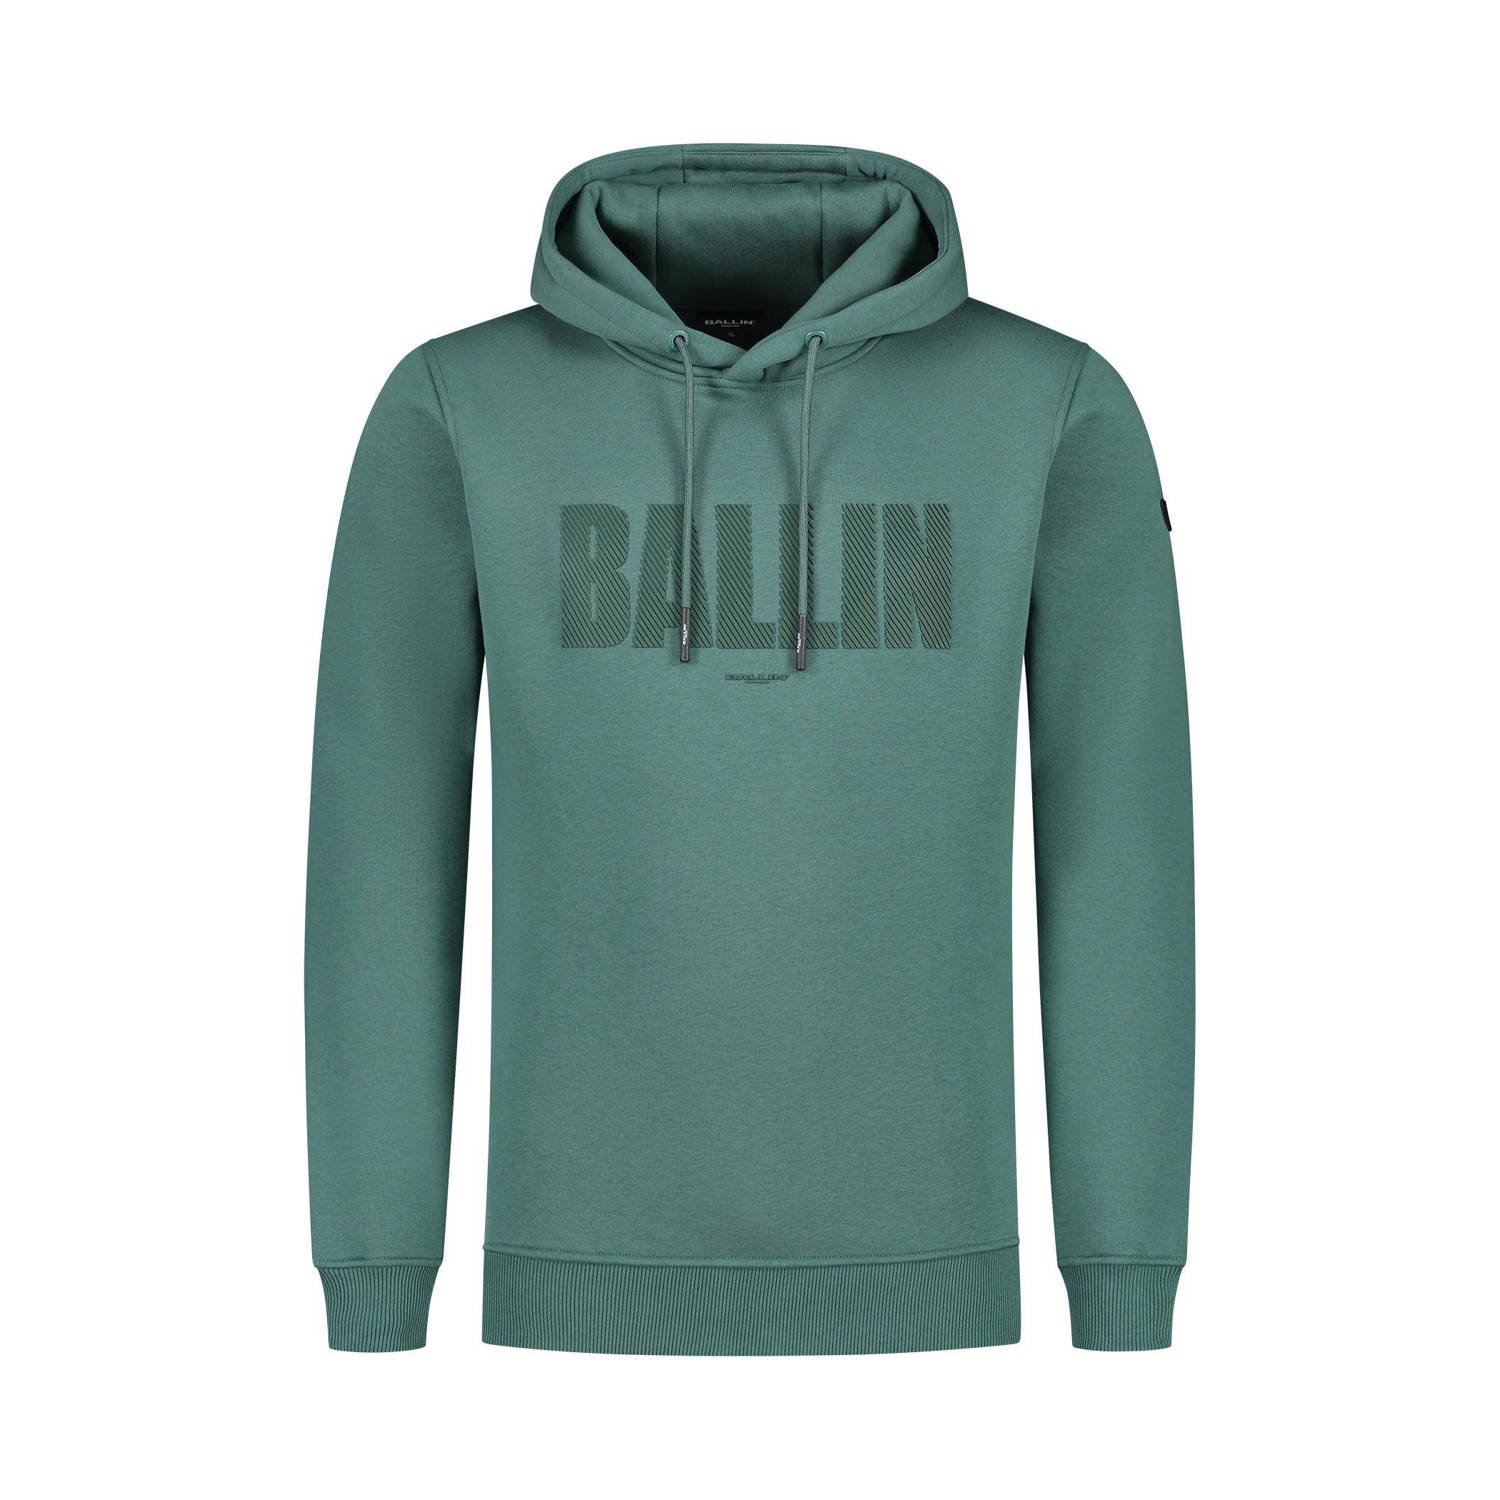 Ballin hoodie met printopdruk faded green